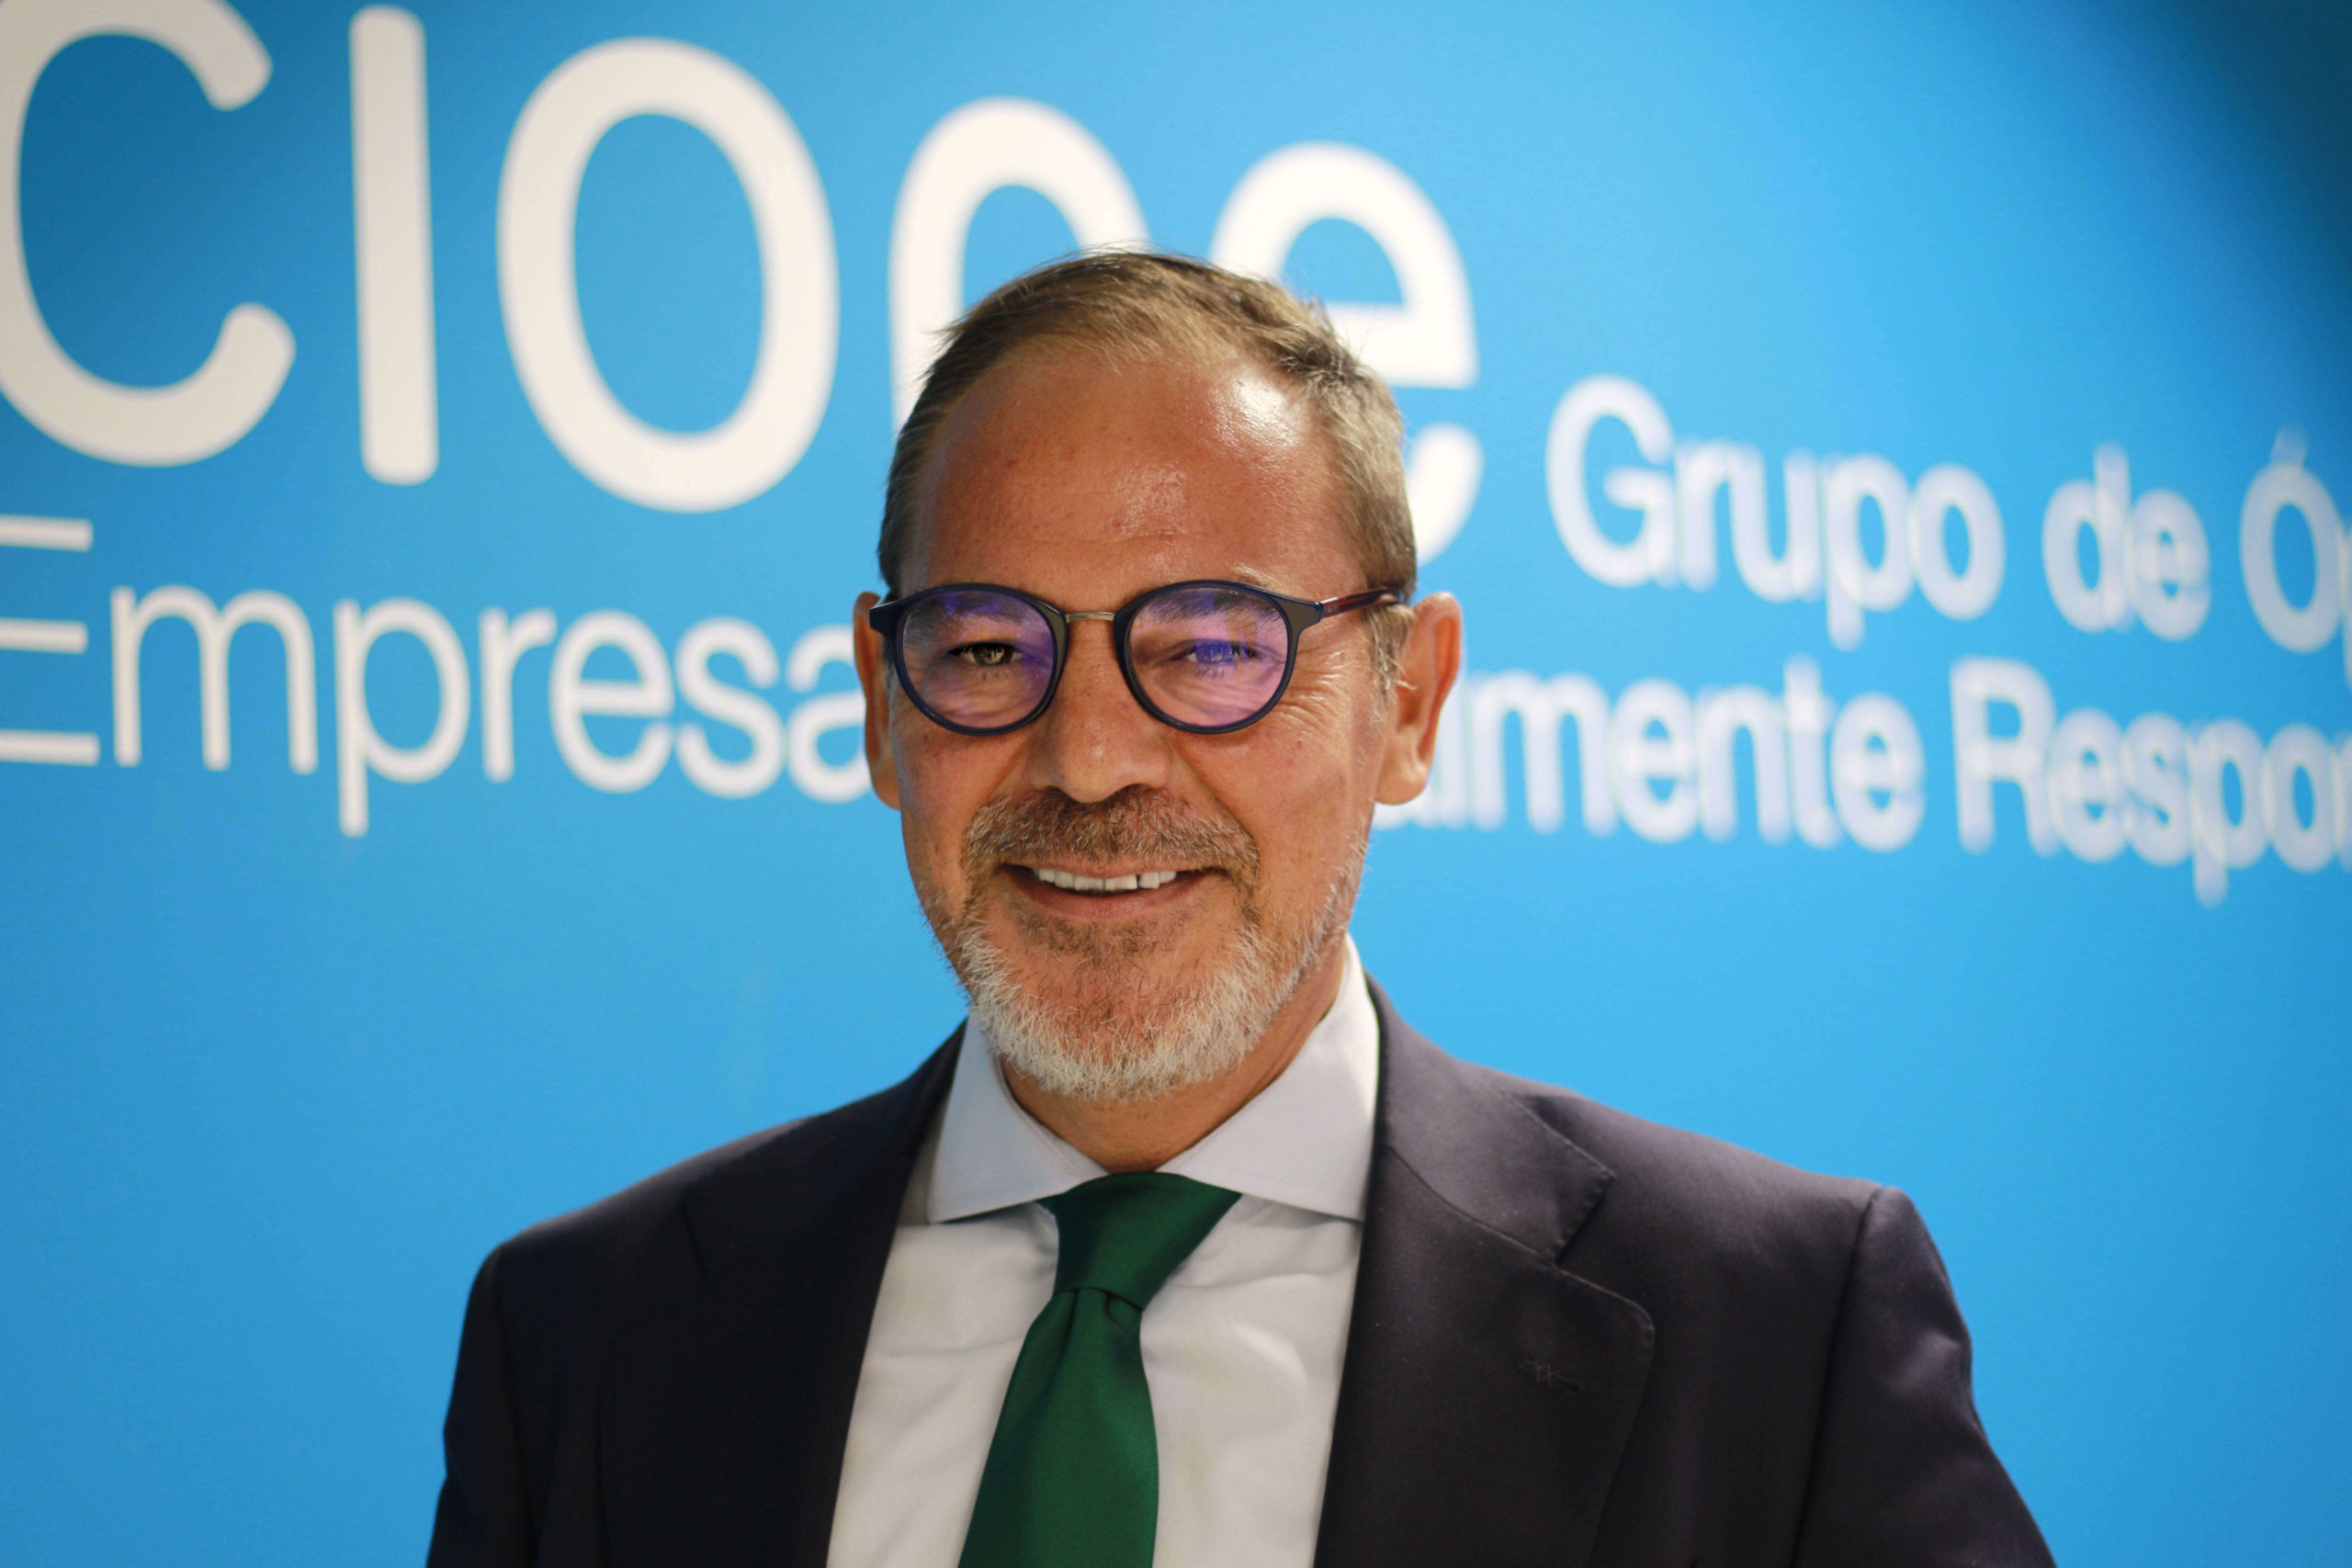 Miguel Ángel García, director general de Cione